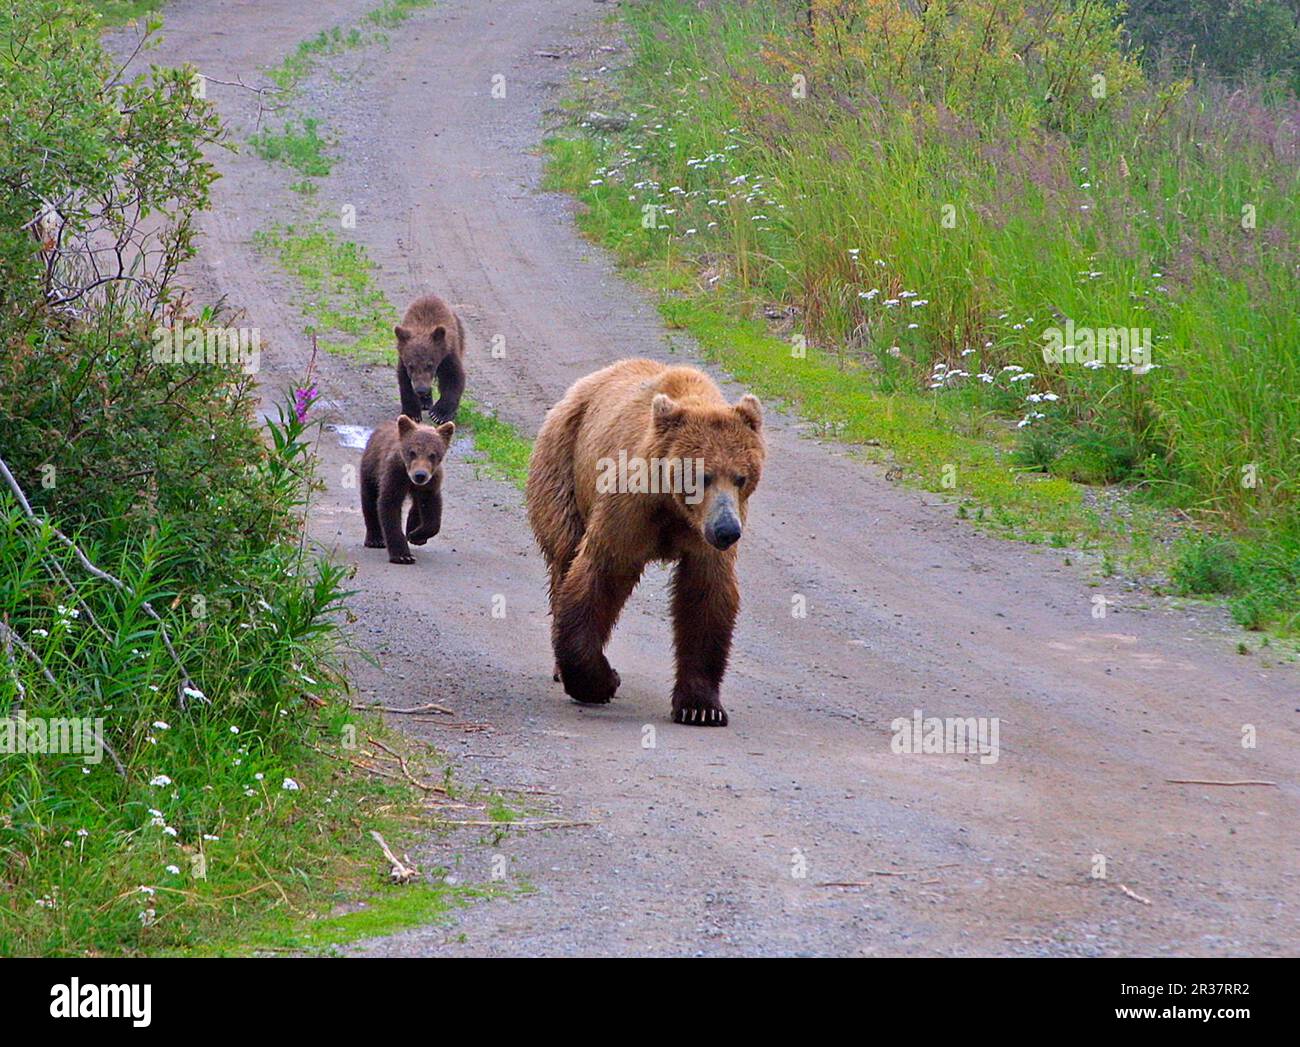 Grizzlybären, Grizzlybären, Braunbären, Braunbären (Ursus arctos), Bären, Raubtiere, Säugetiere, Tiere, Grizzly-Bär-Mutter führt zwei Jungen an Stockfoto